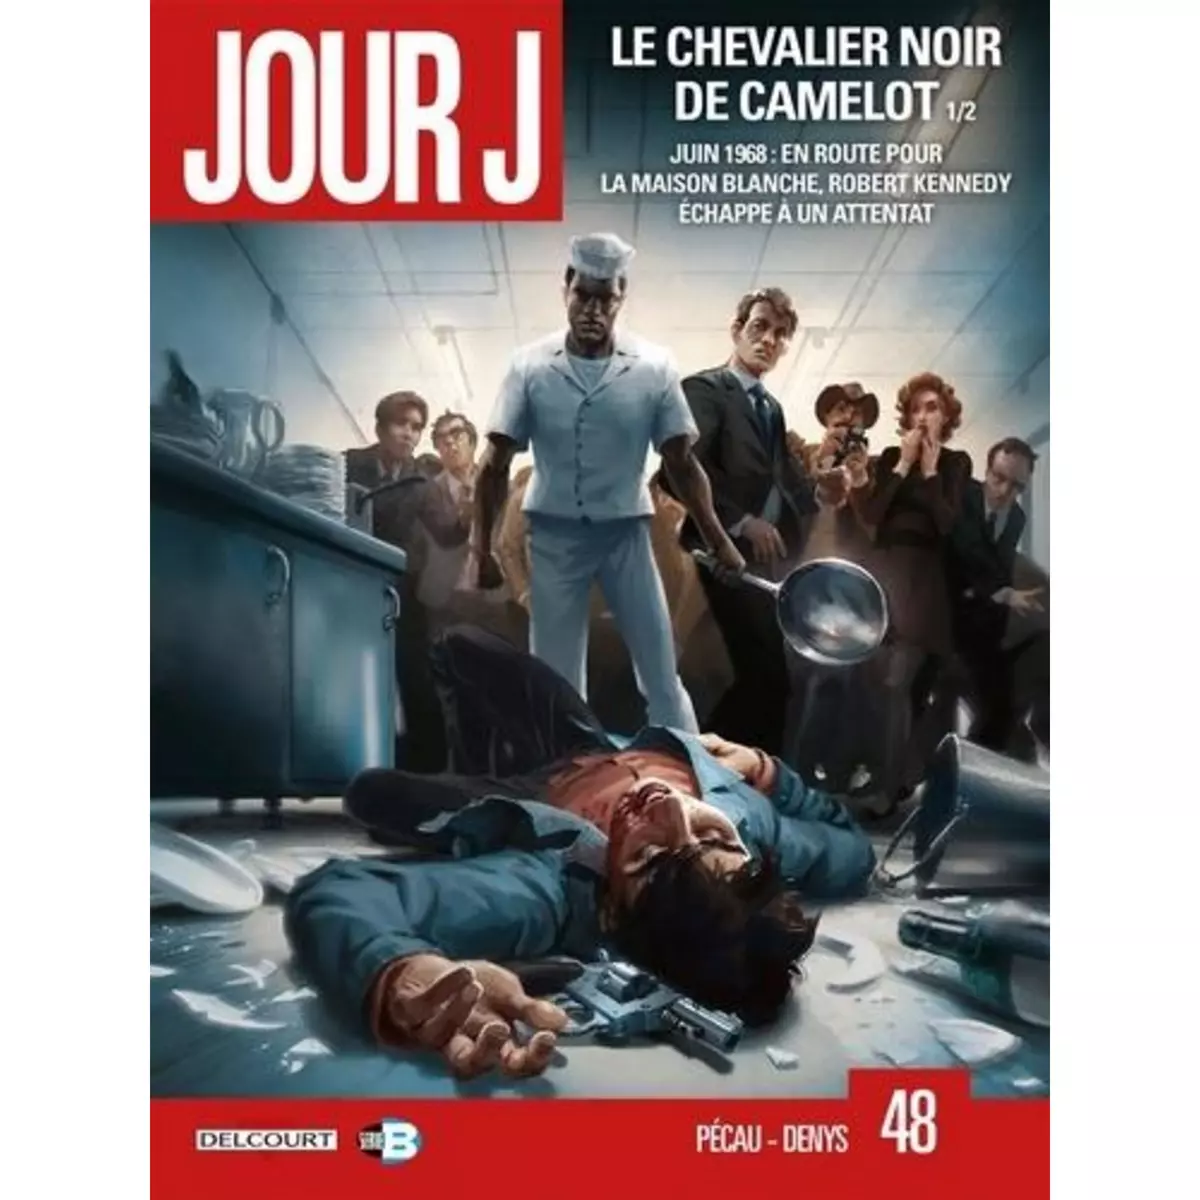  JOUR J TOME 48 : LE CHEVALIER NOIR DE CAMELOT 1/2, Pécau Jean-Pierre